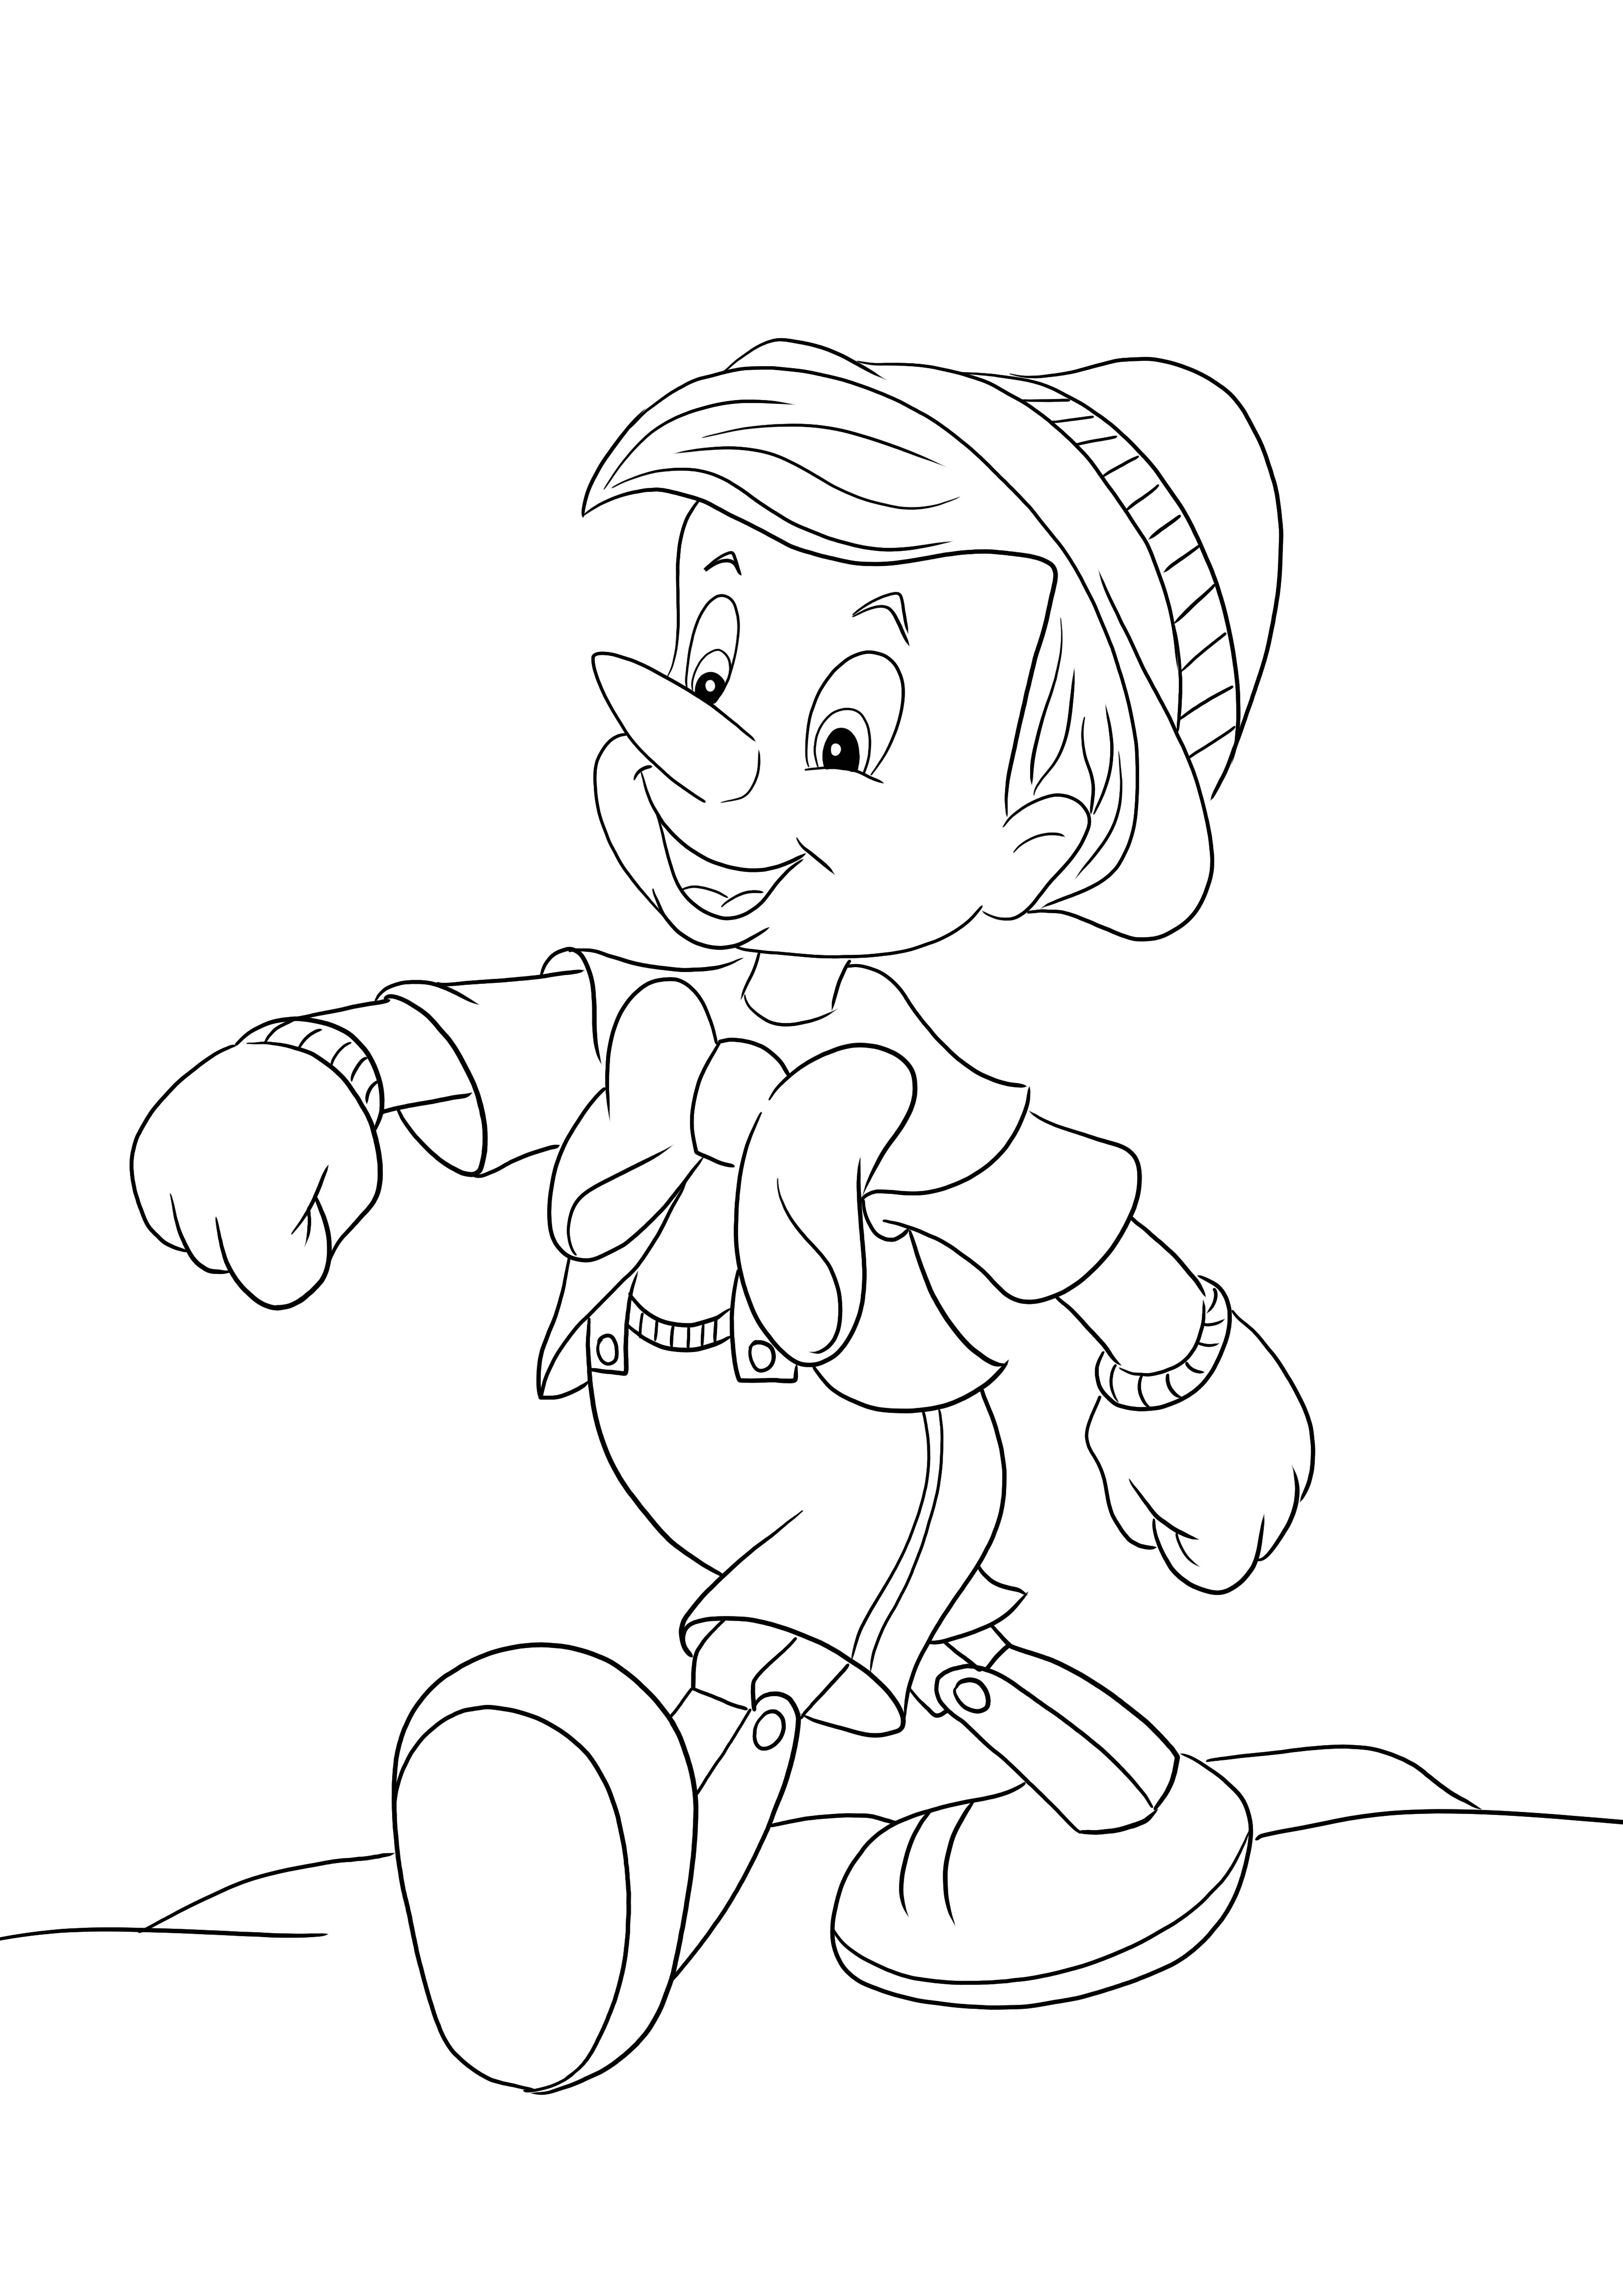 Pinocchio kävelee ylpeänä värityssivu - valmis ladattavaksi ja väritettäväksi